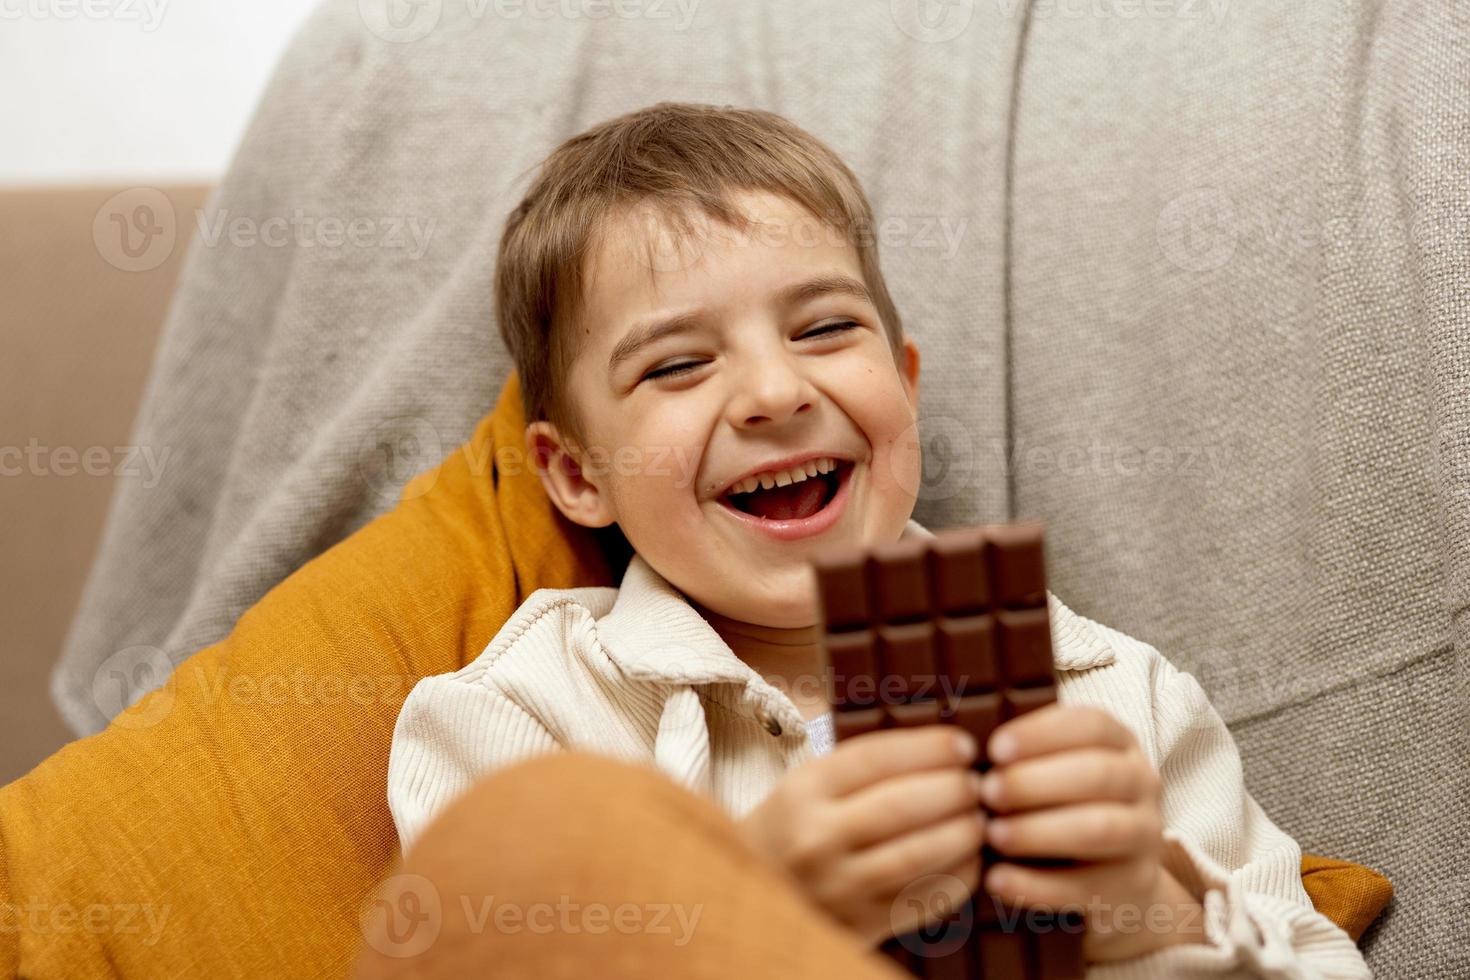 petit garçon adorable assis sur le canapé à la maison et mangeant une barre de chocolat. enfant et bonbons, confiserie de sucre. enfant savoure un délicieux dessert. enfant d'âge préscolaire avec des vêtements décontractés. émotion positive. photo